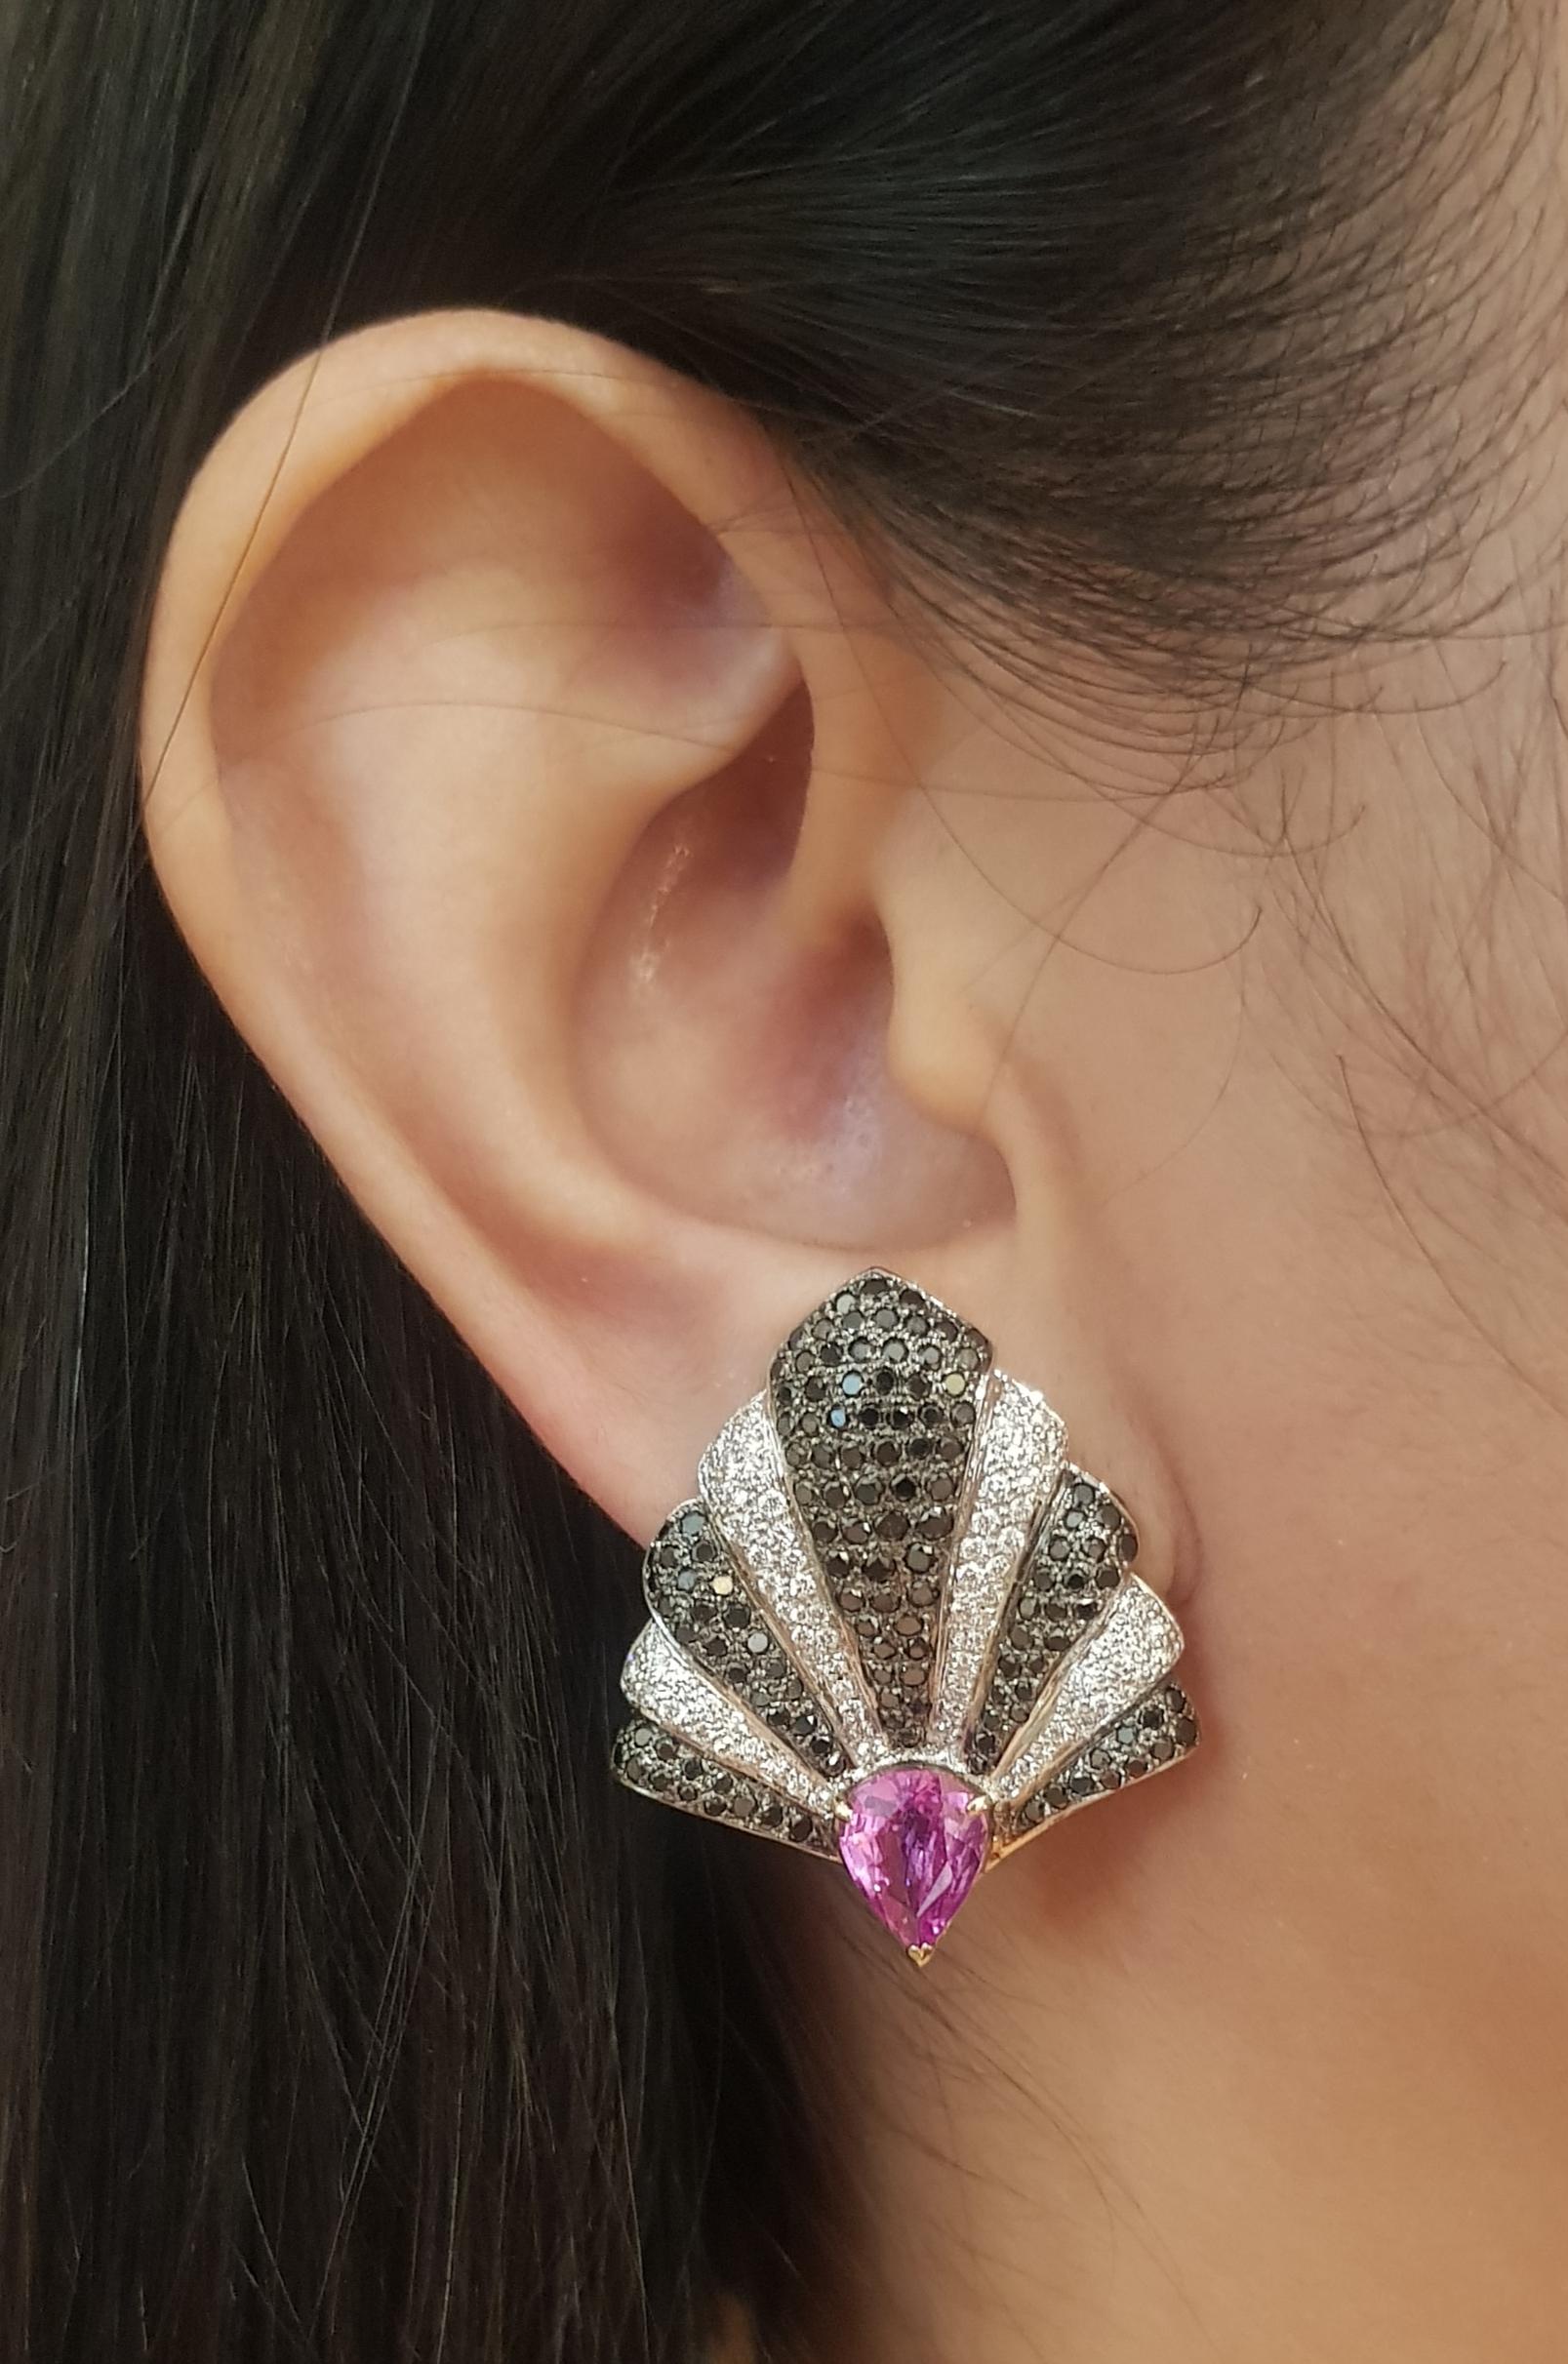 Rosa Saphir 3,14 Karat, Diamant 0,94 Karat und schwarzer Diamant 2,32 Karat Ohrringe in 18K Goldfassung

Breite: 2.7 cm 
Länge: 3.1 cm
Gesamtgewicht: 16,39 Gramm

